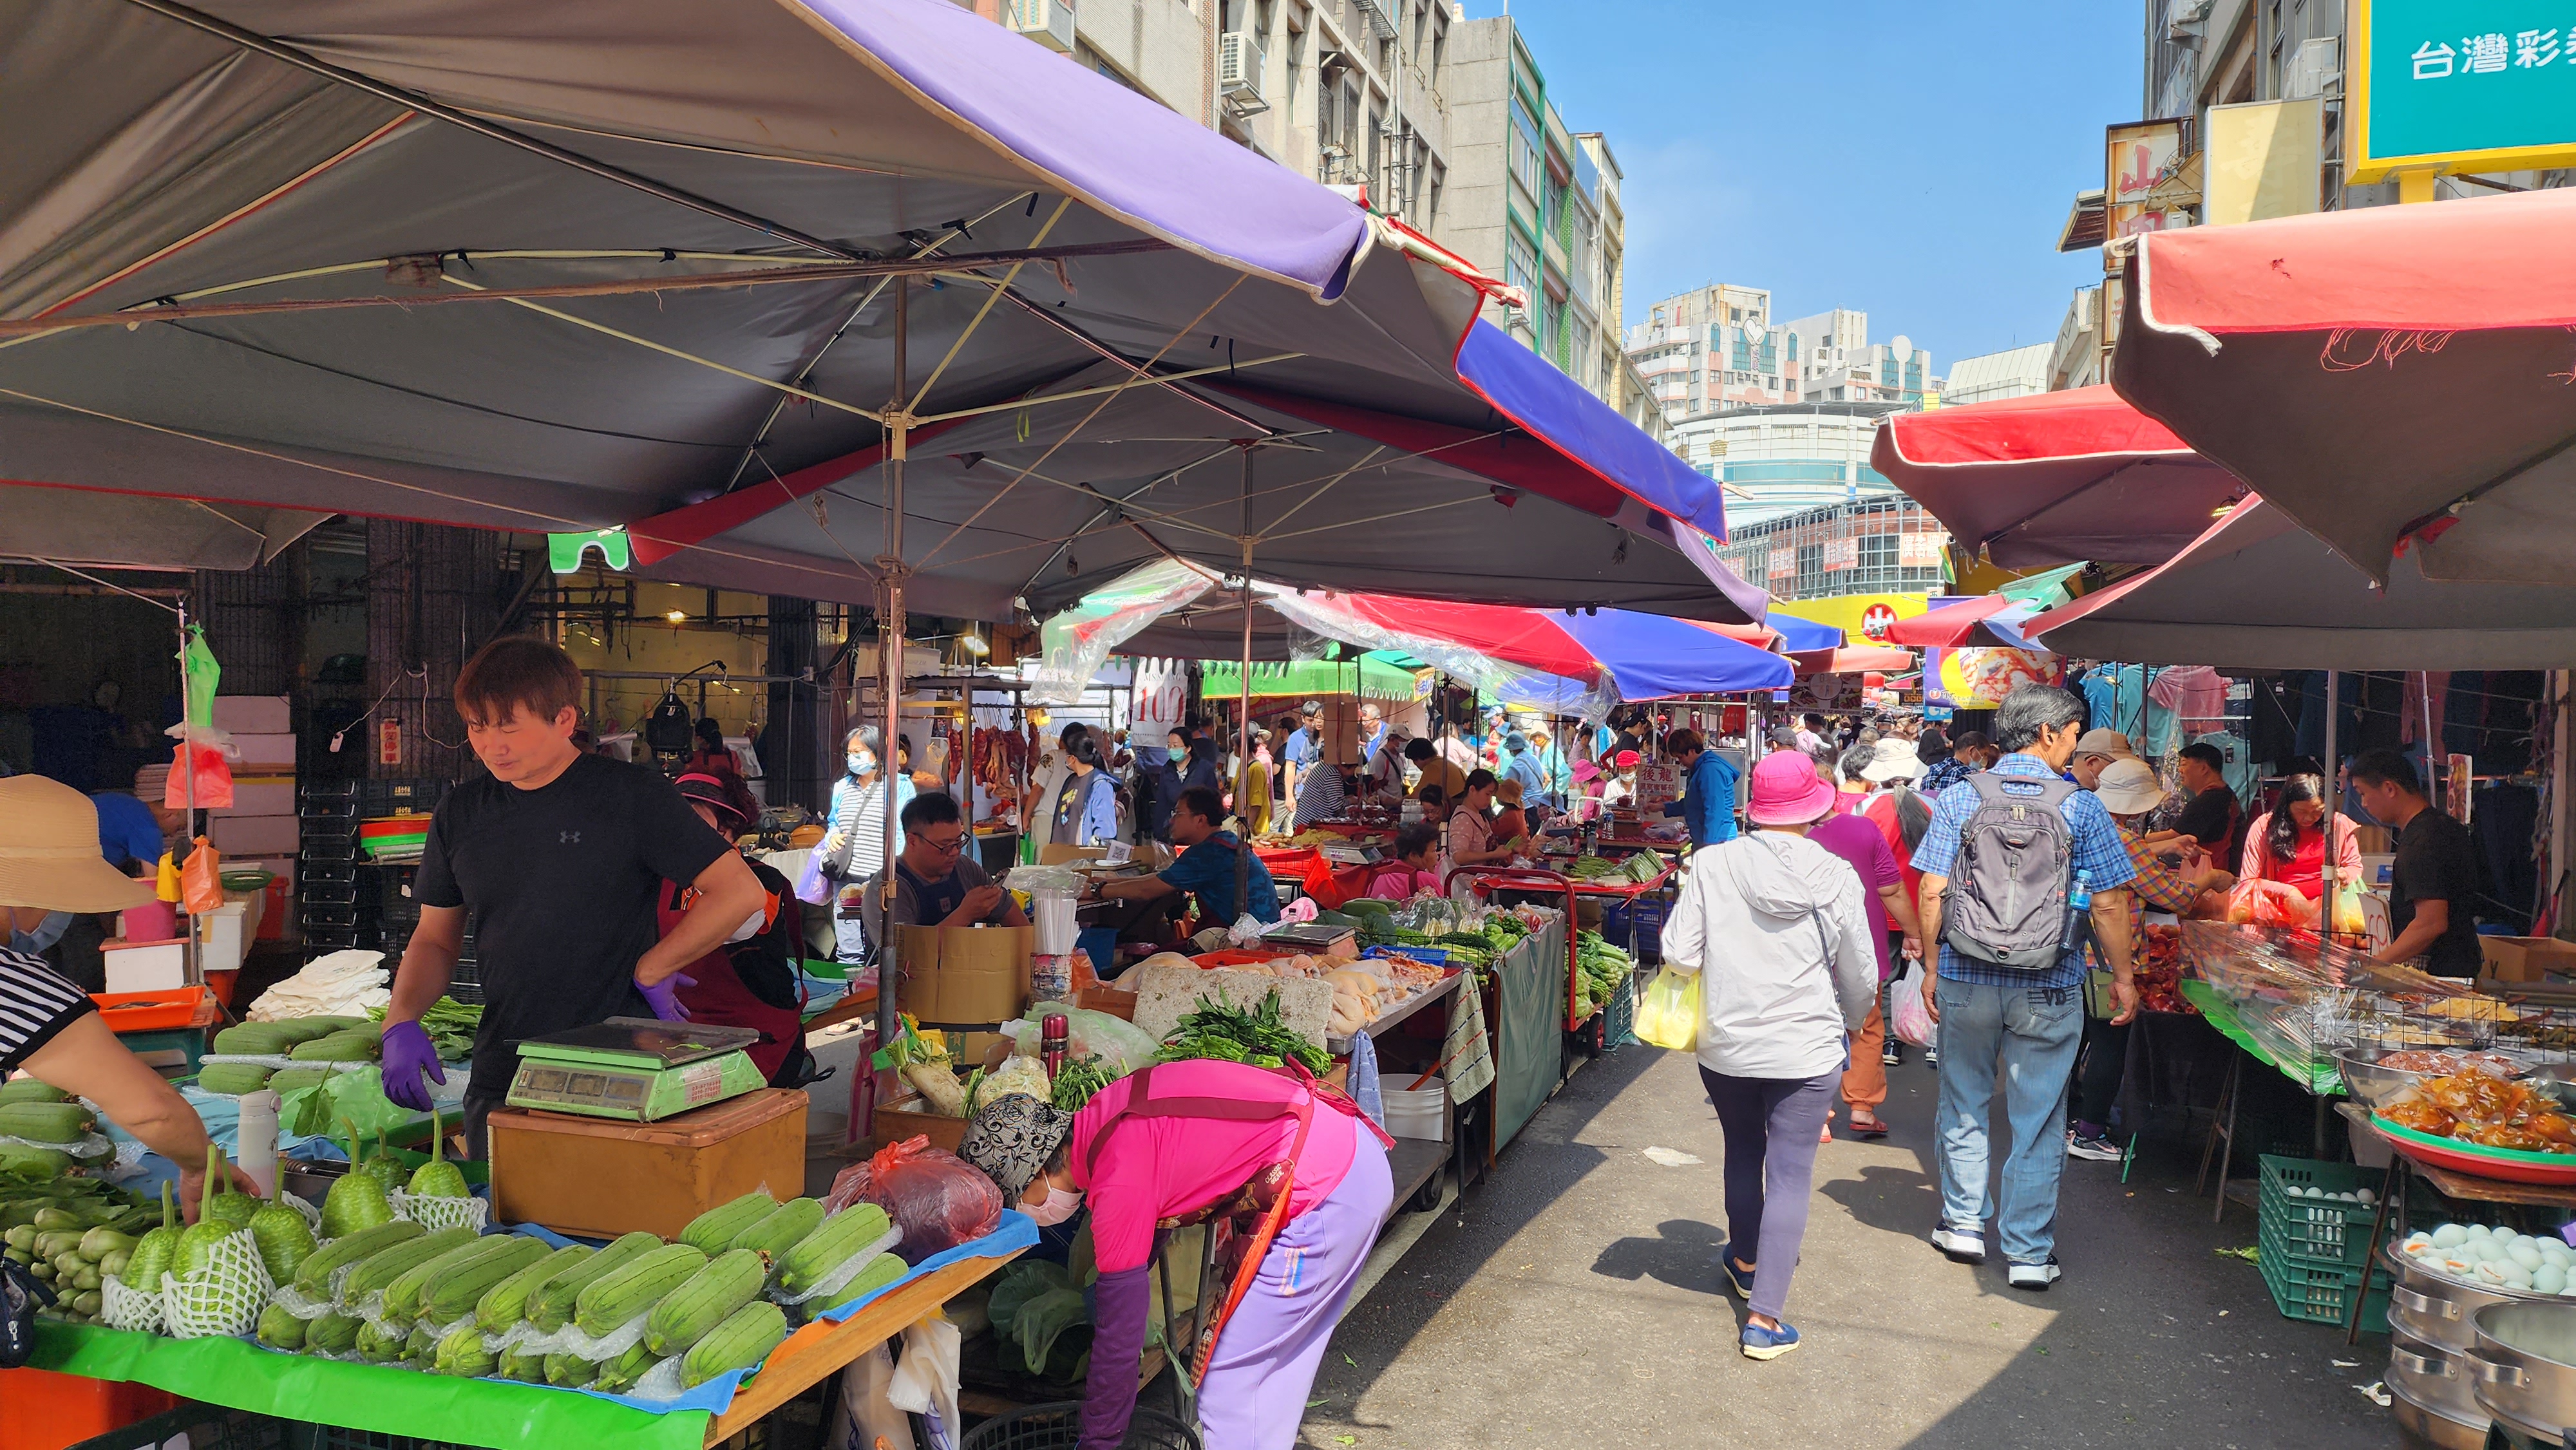 头份市中山市场沿街摊商目前营运不受影响。记者胡蓬生／摄影